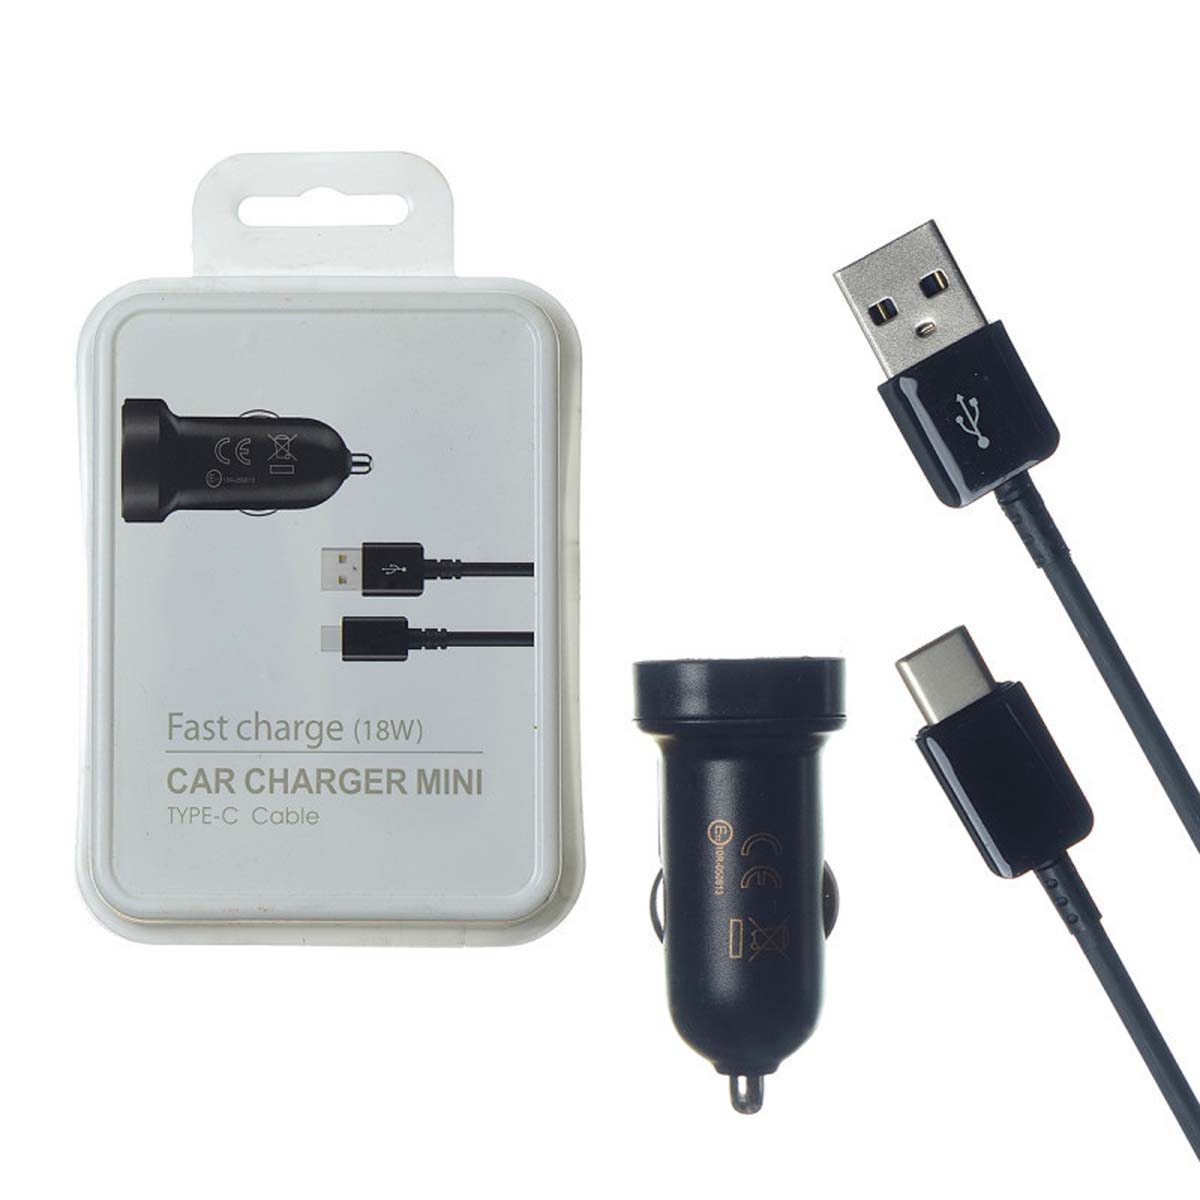 АЗУ(Автомобильное зарядное устройство) S7 EP-LN930 c кабелем USB Type C, 2A, длина 1 метр, цвет черный